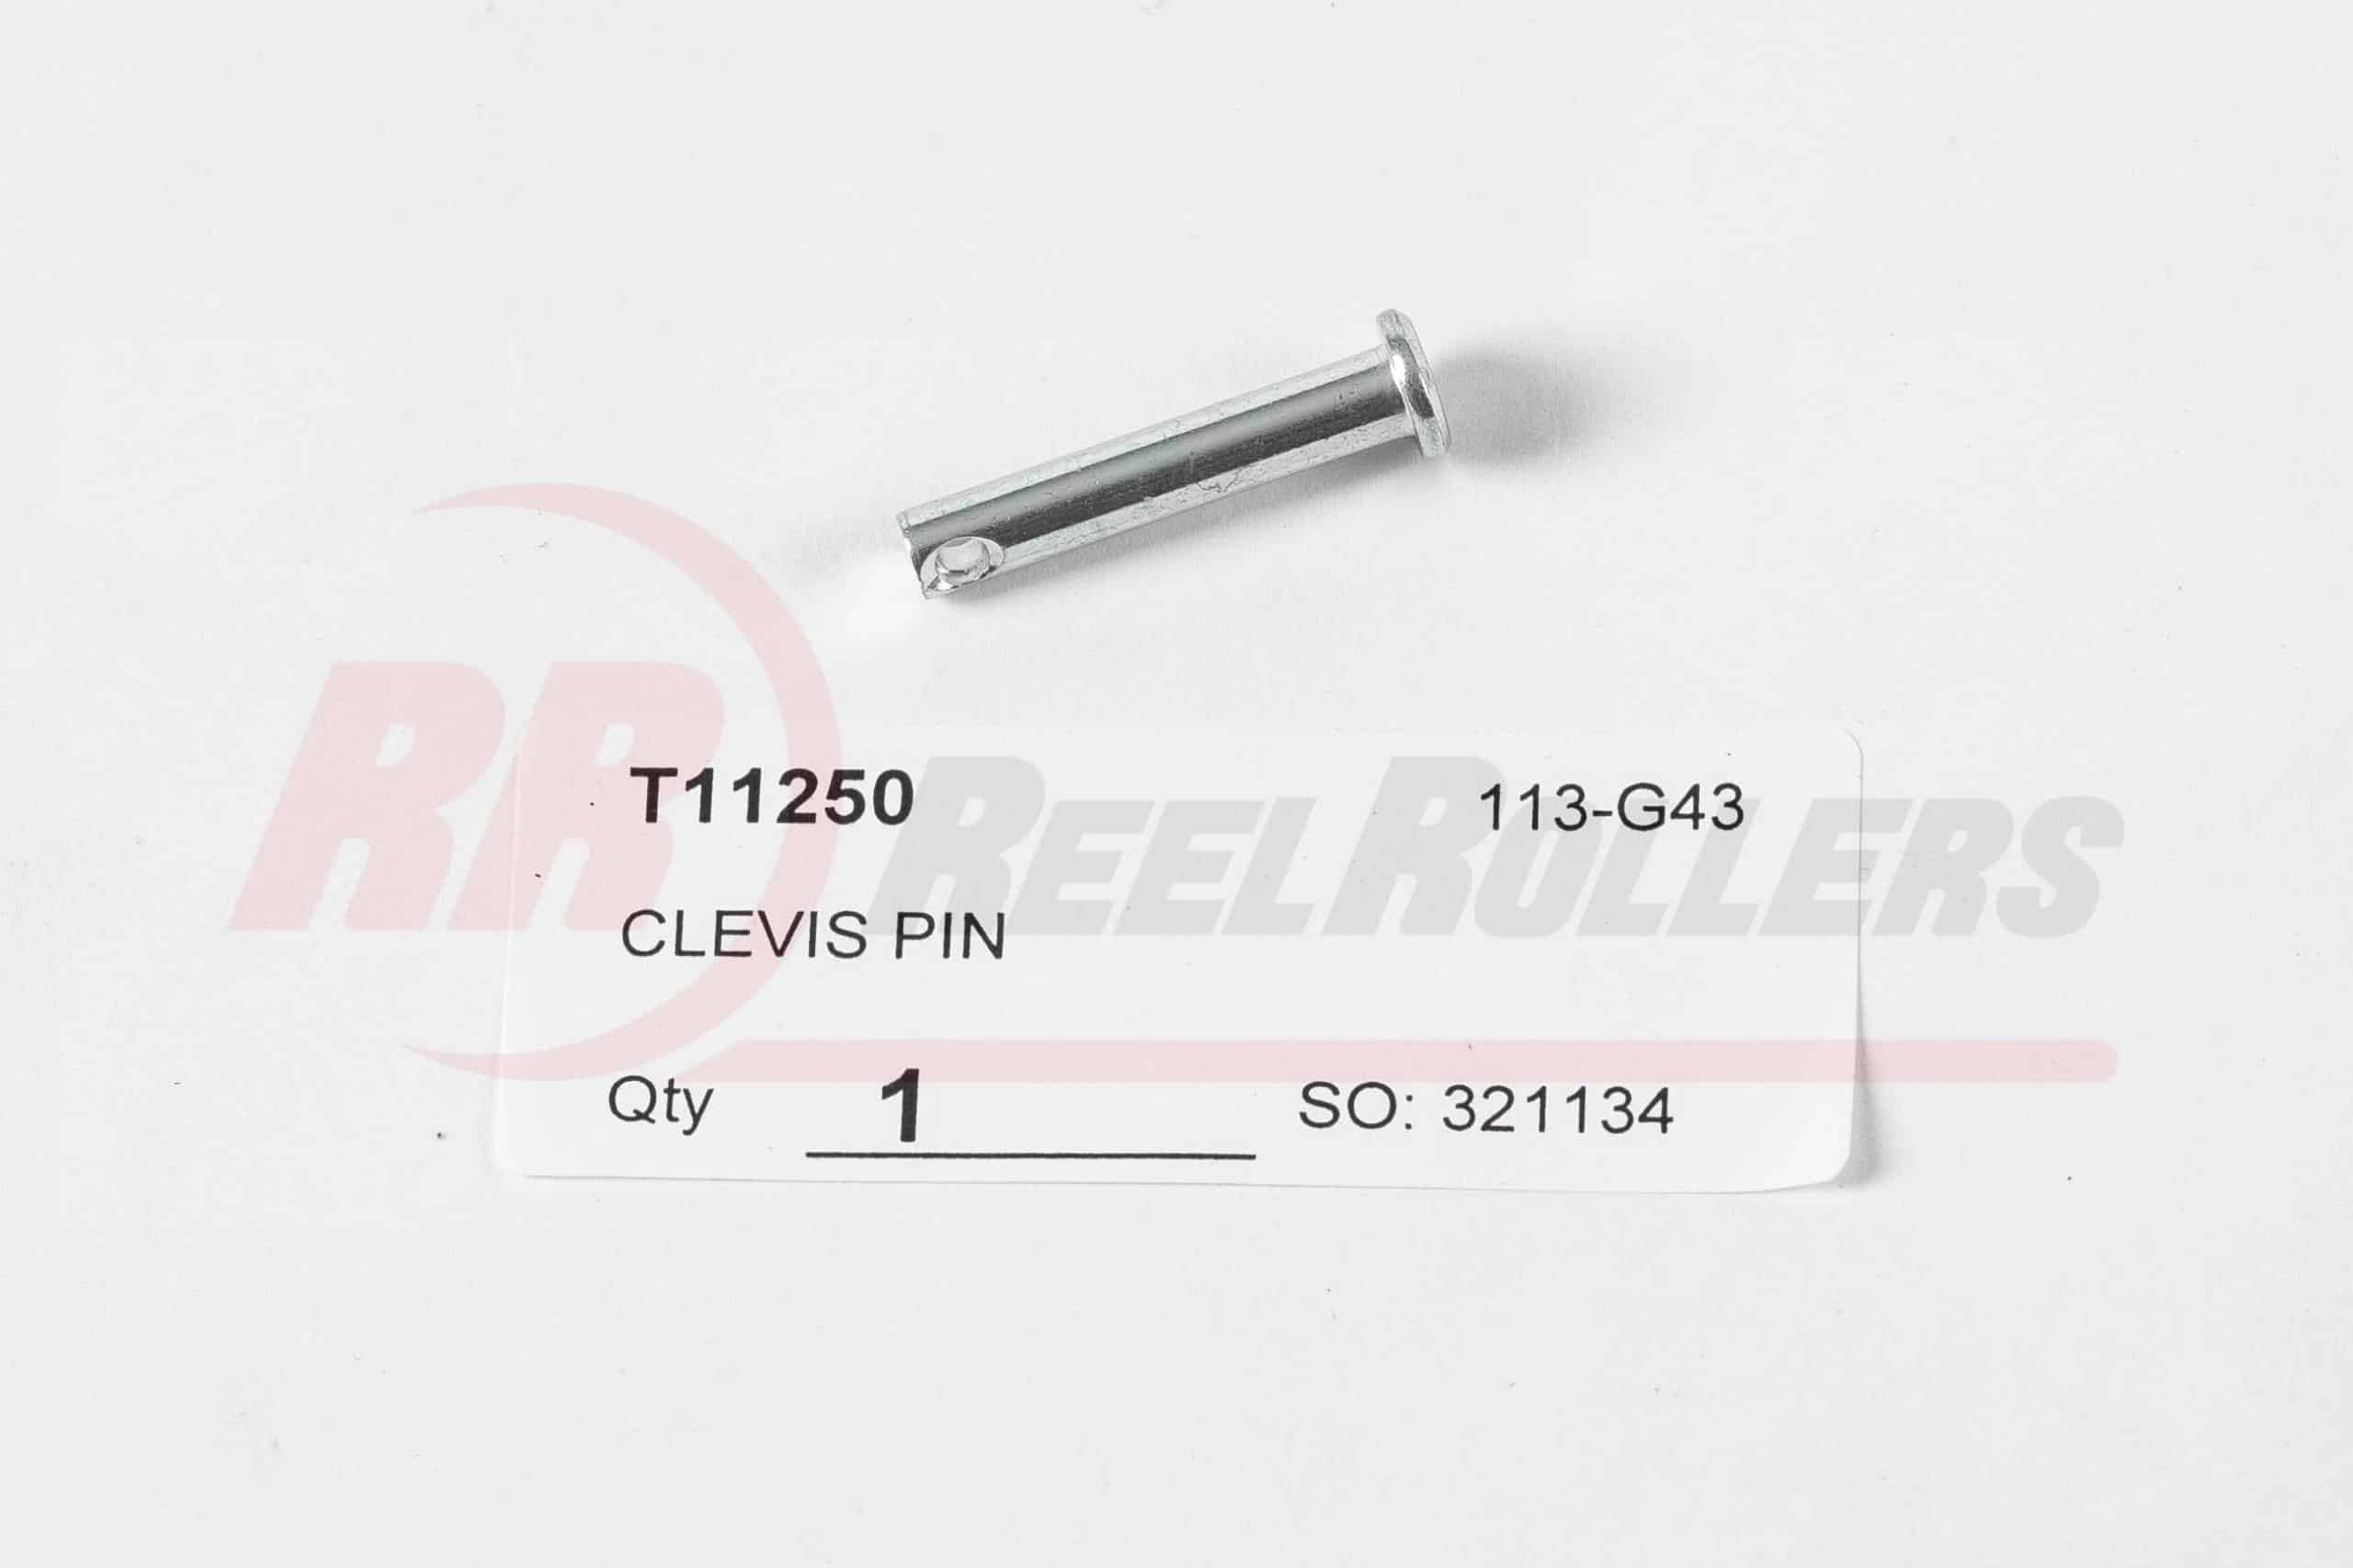 Tru Cut Clevis Pin - Part #T11250